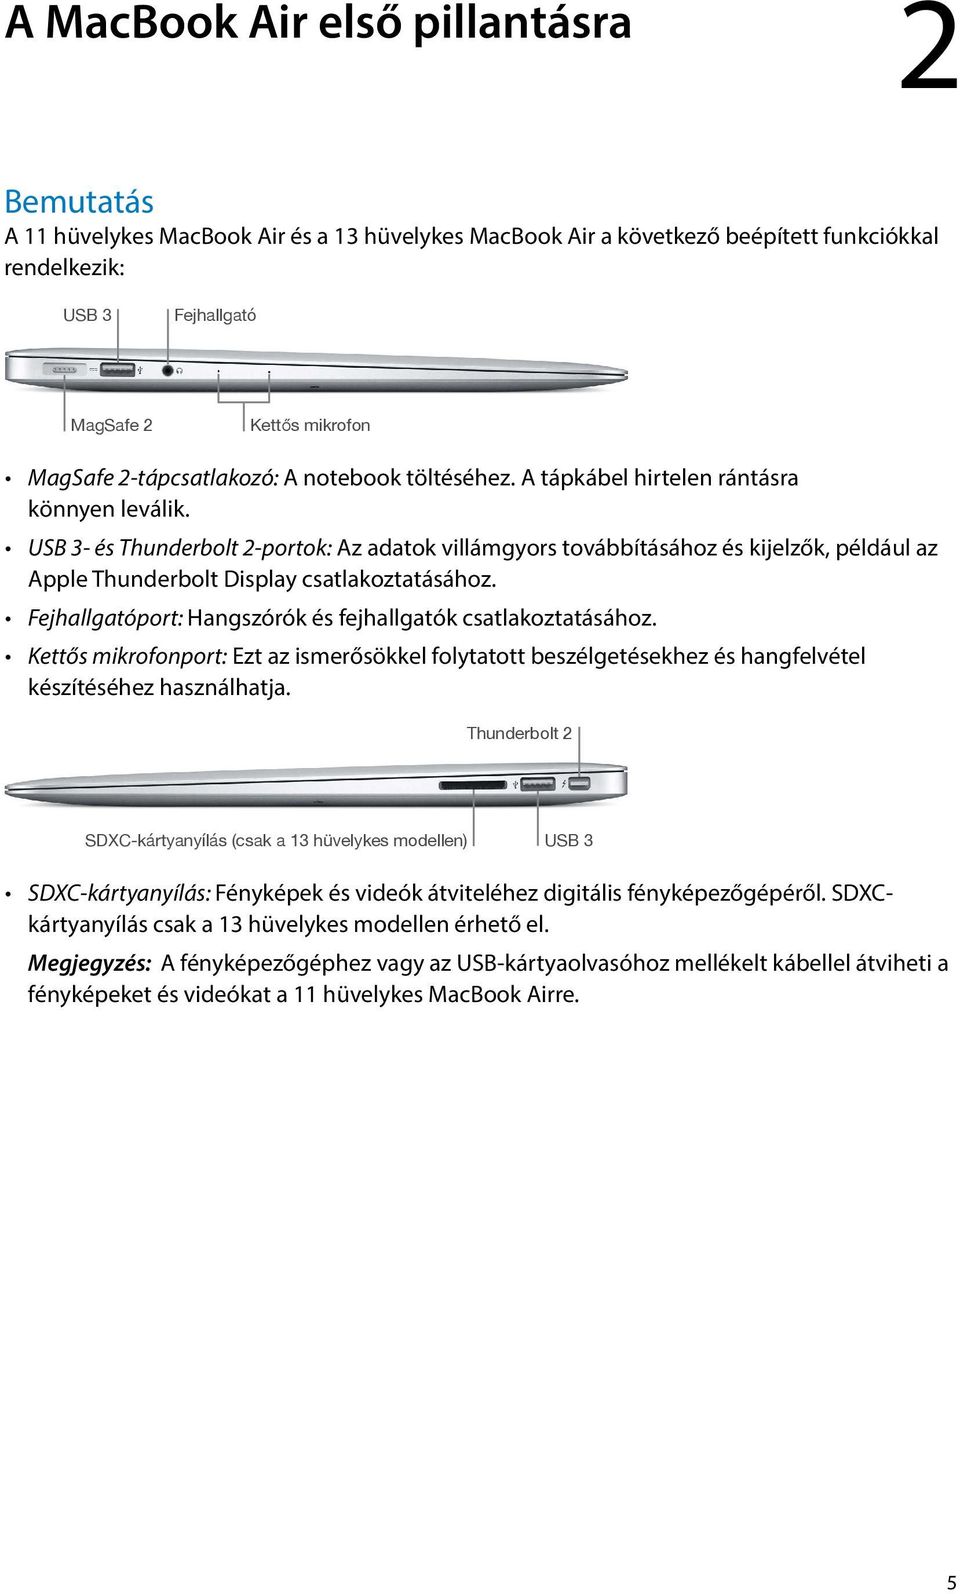 MacBook Air Alapvető tudnivalók - PDF Ingyenes letöltés